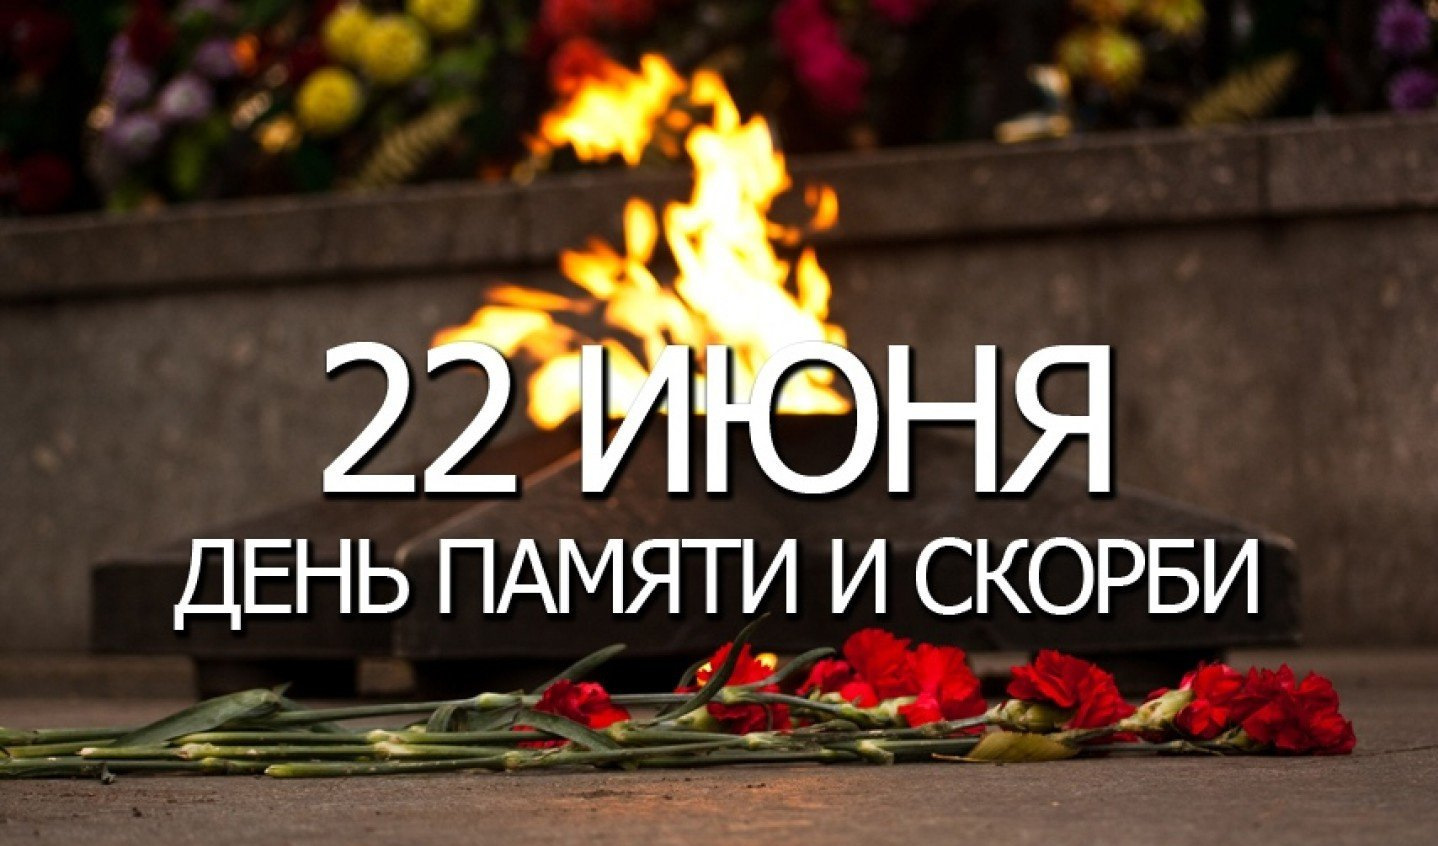 14 22 июня. День памяти и скорби. 22 Июня день памяти. День памяти и скорби — день начала Великой Отечественной войны. День скорби 22 июня.